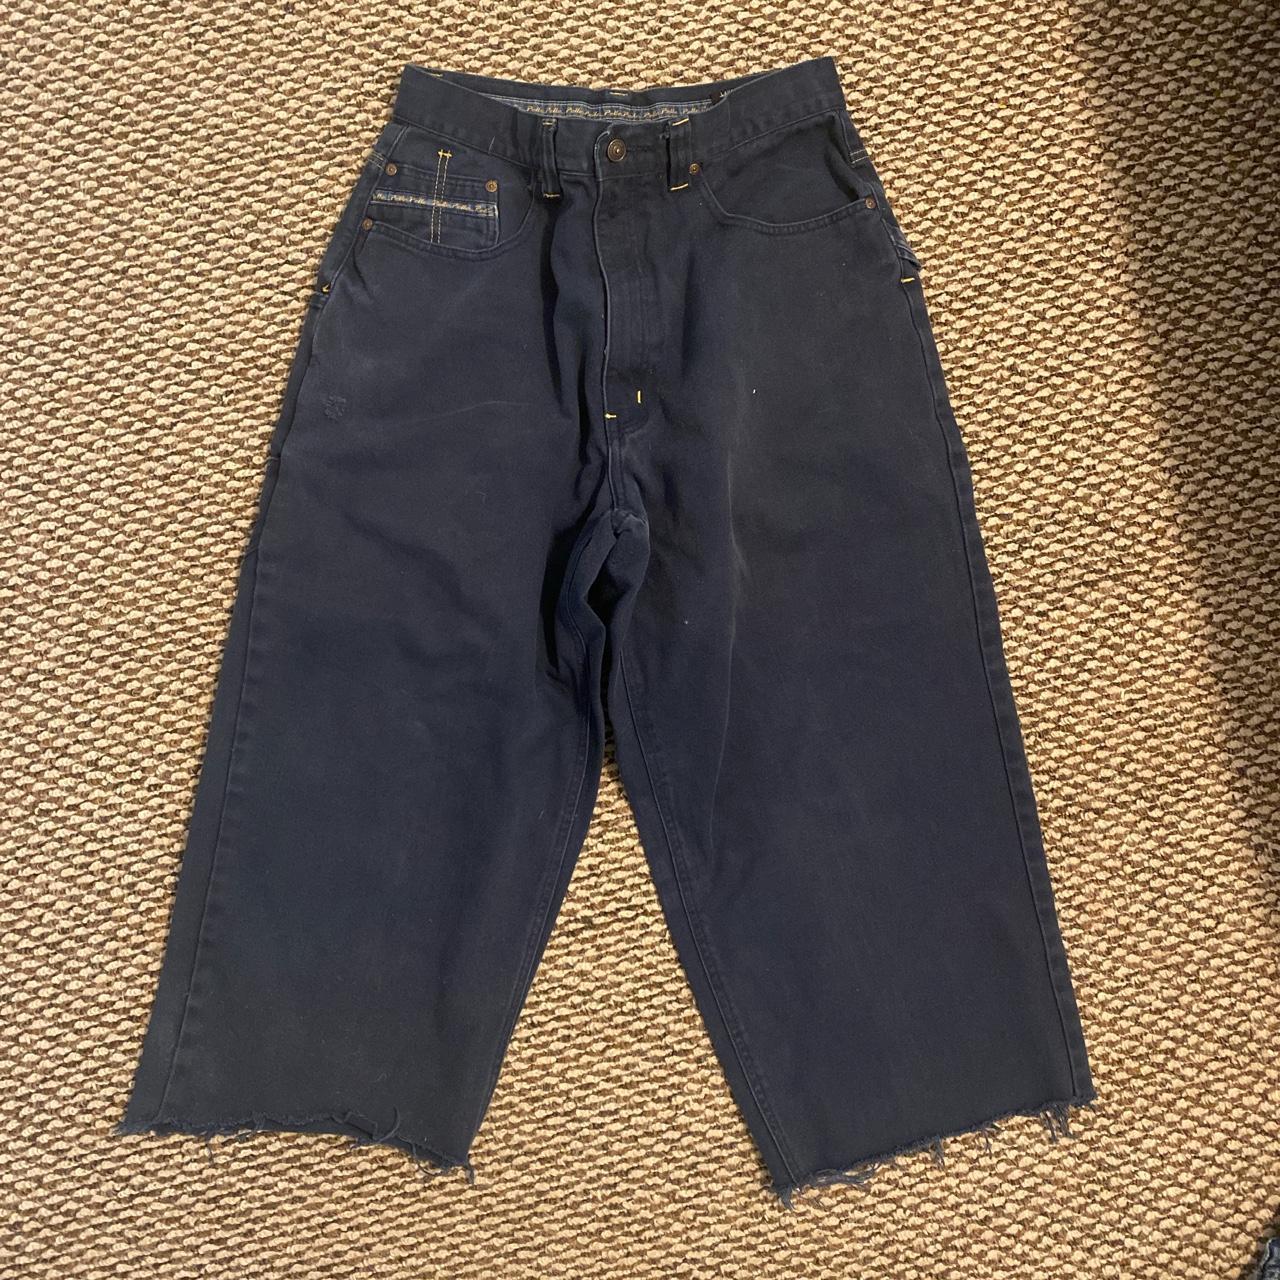 Pelle Pelle Men's Navy Jeans | Depop